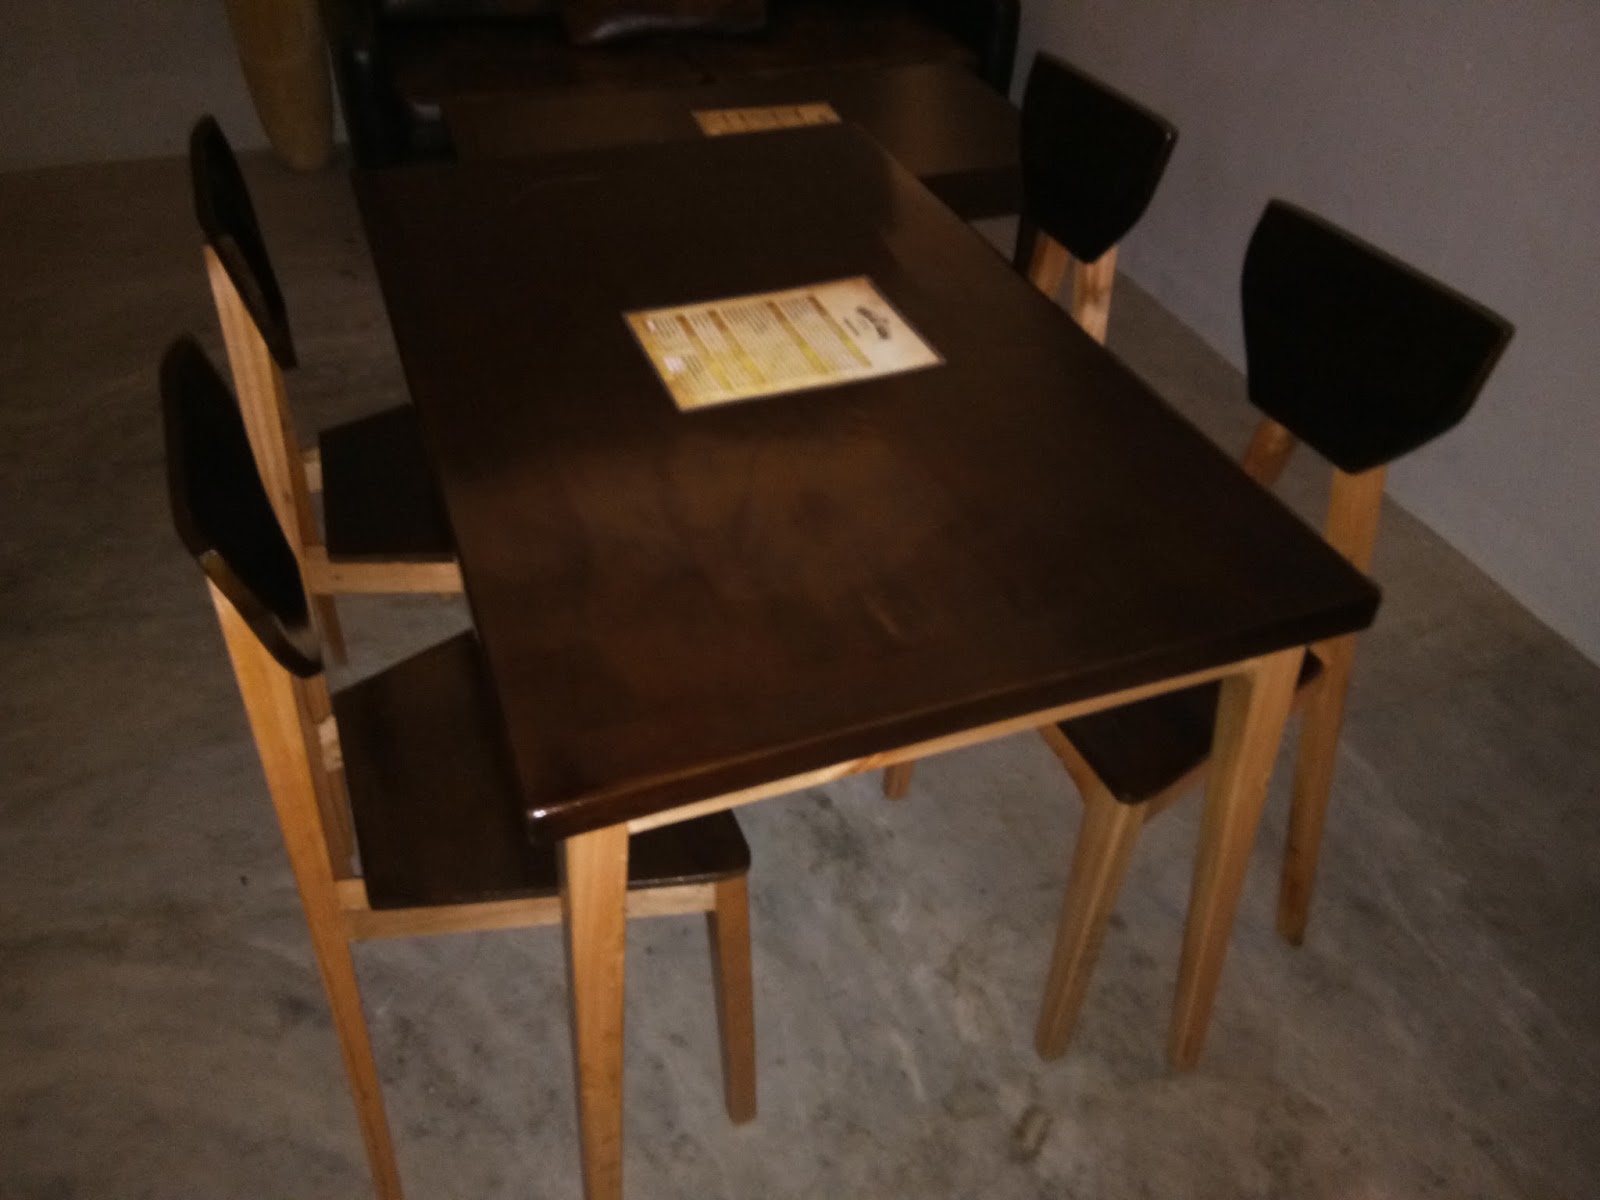 Jati Belanda Pekanbaru  Wood Furniture  0812 6880 4257